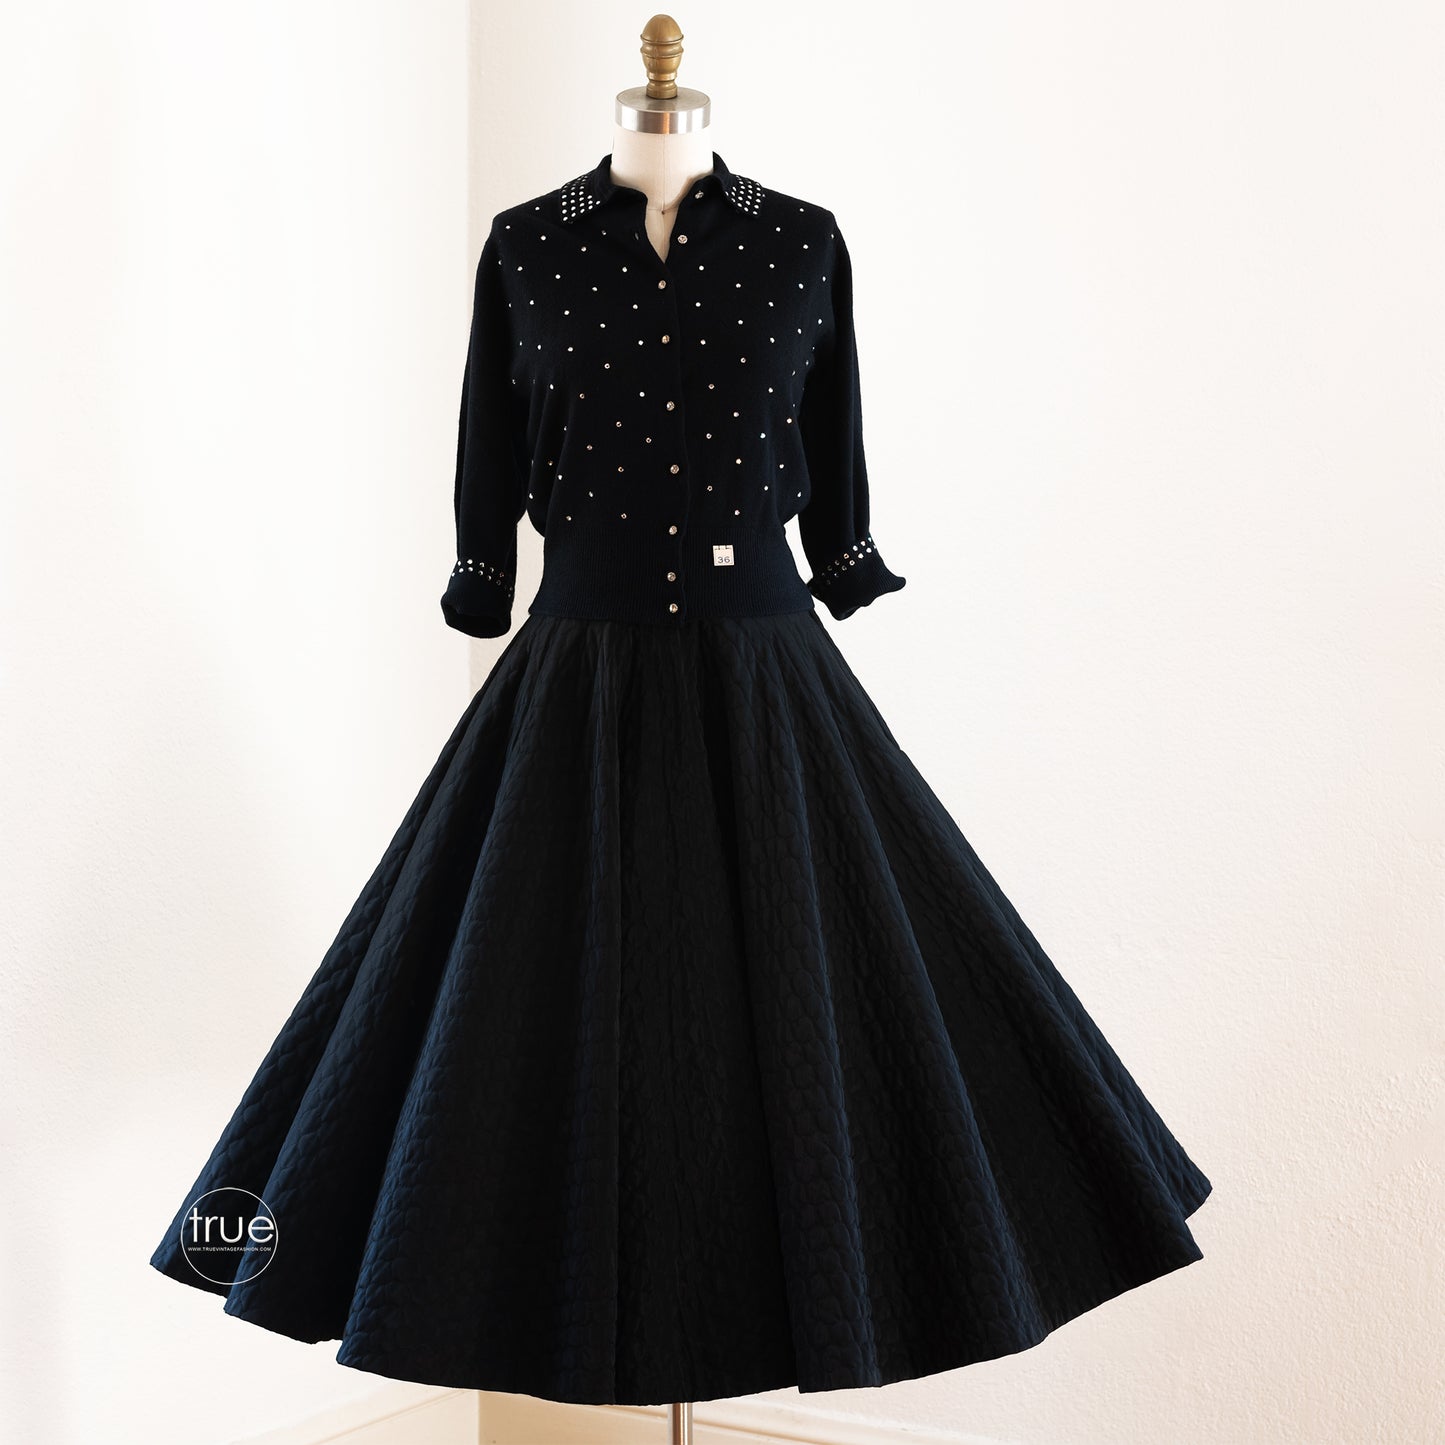 vintage 1950's circle skirt ...wardrobe staple Koret of California black quilted FULL CIRCLE skirt